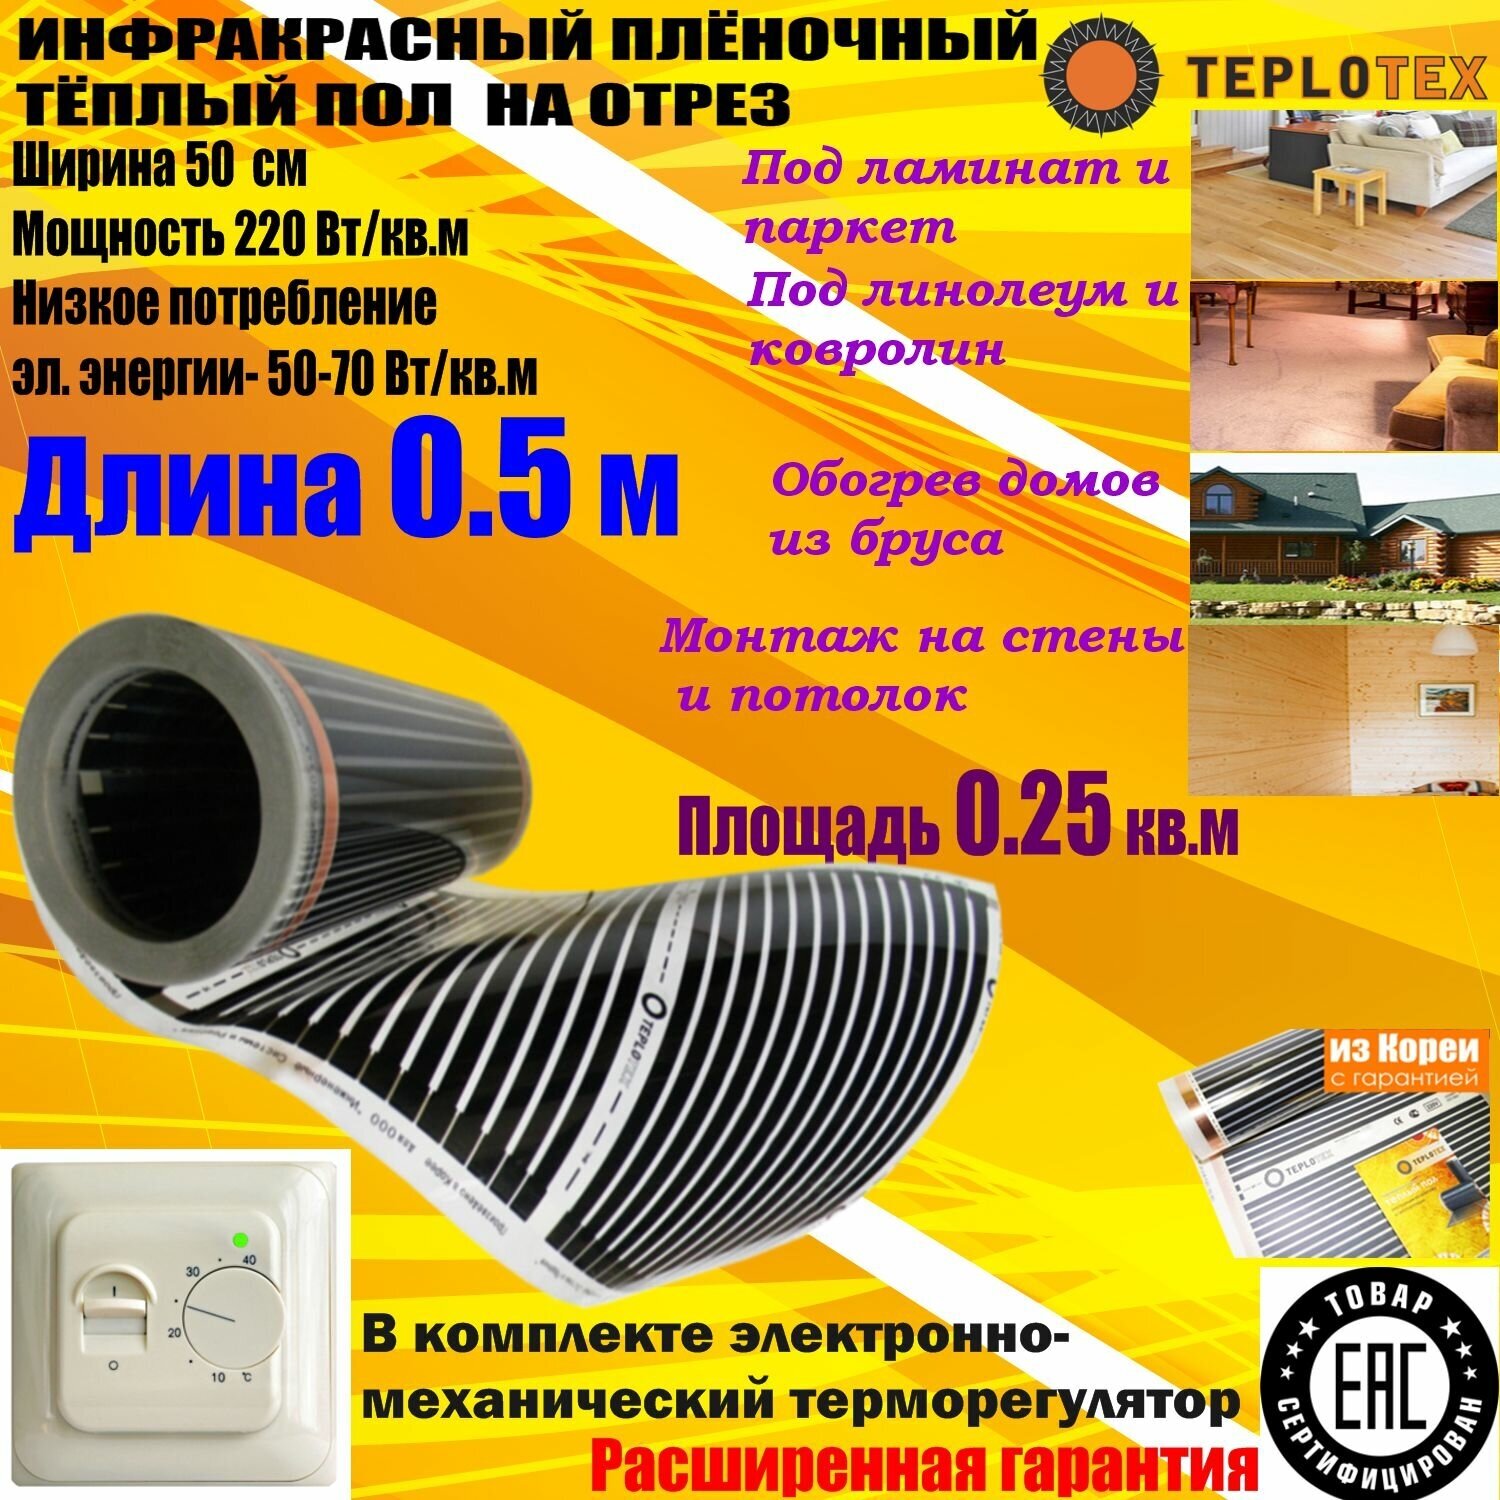 Комплект: Инфракрасный тёплый пол на отрез: TEPLOTEX-длина 0.5 м/площадь обогрева 0.25 кв. м/мощность 55 Вт + Терморегулятор RTC 70 - фотография № 1